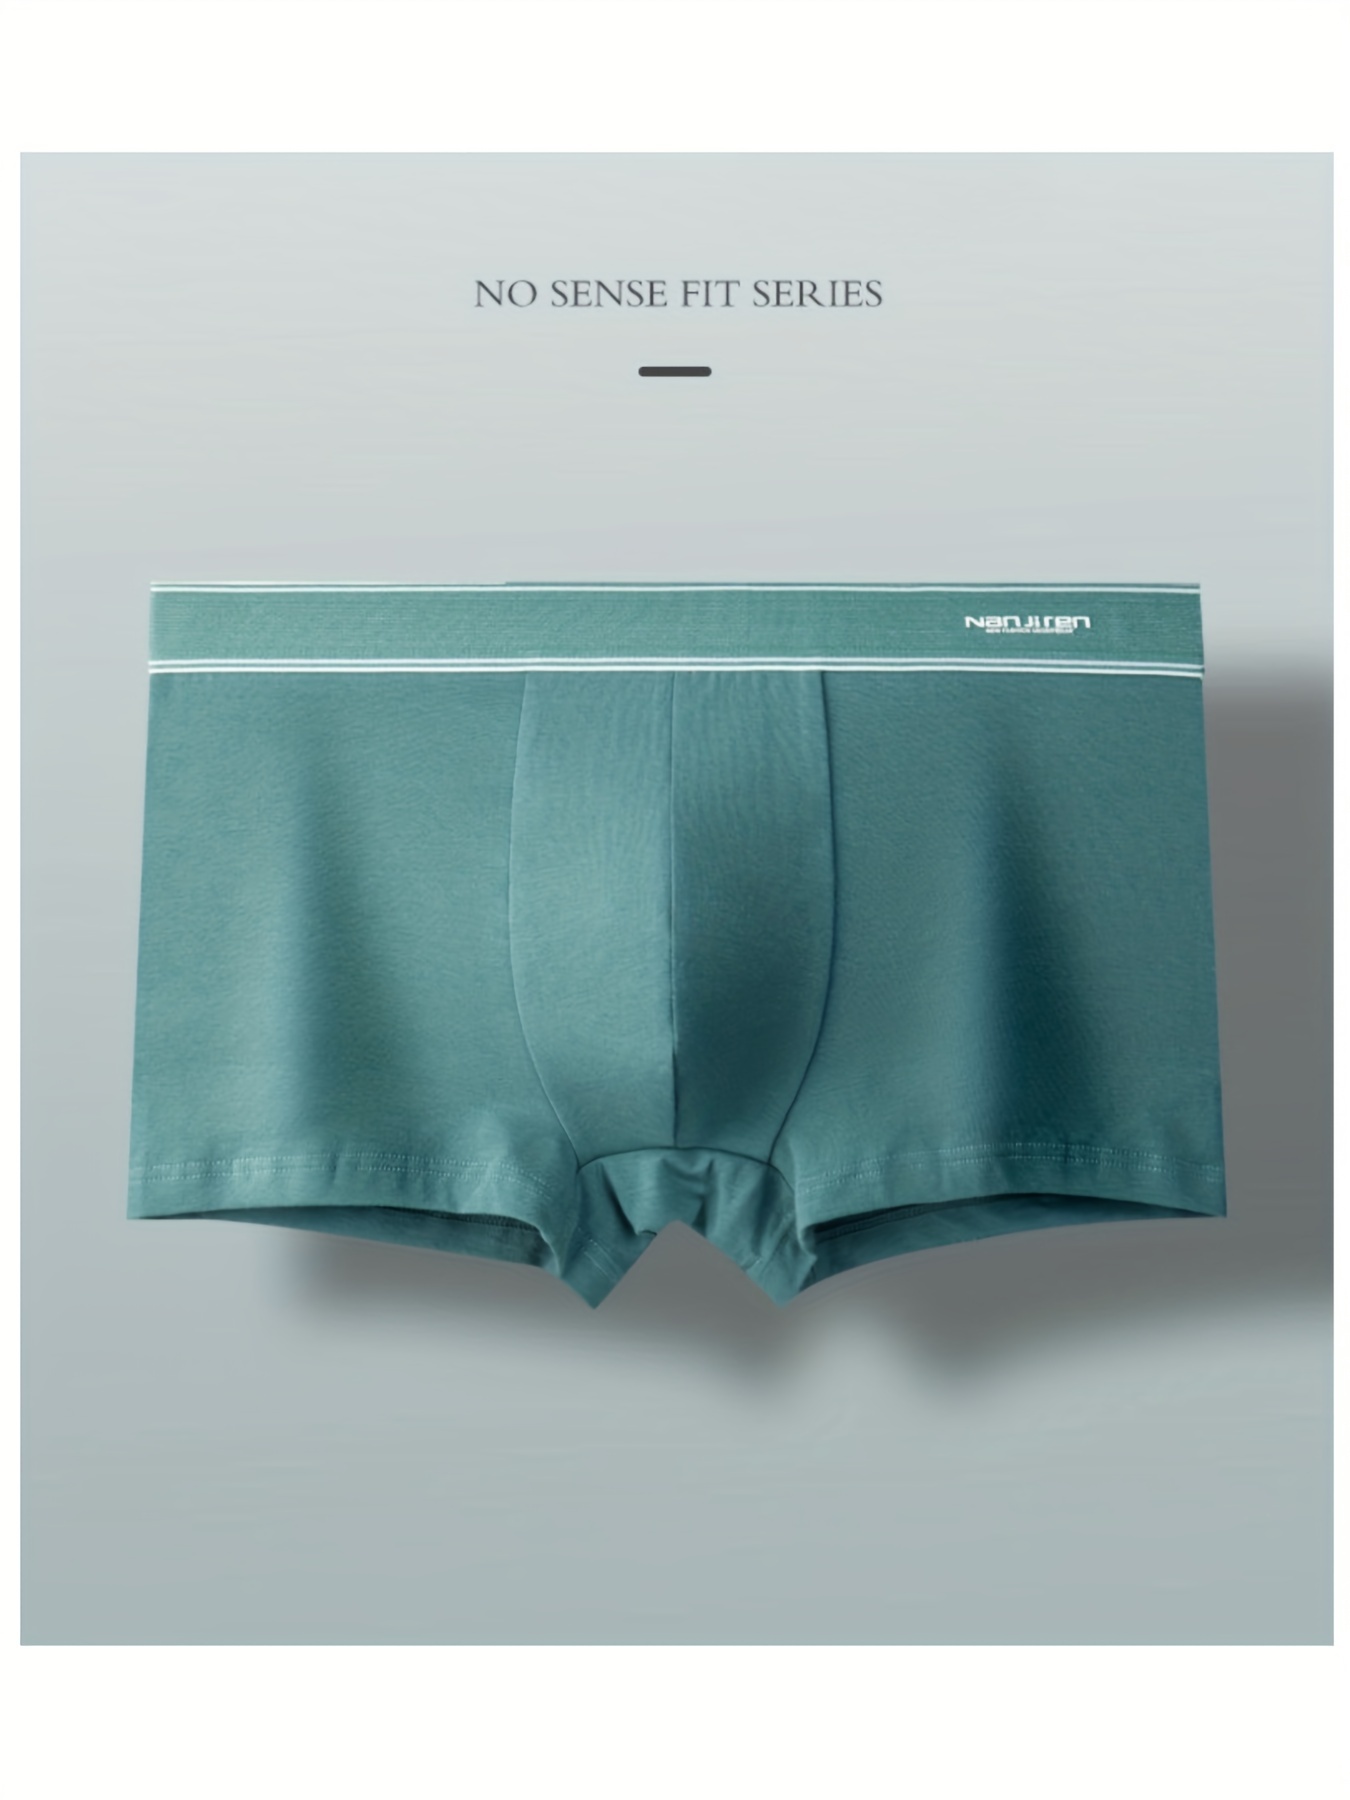 Briefs Shorts Panties, Sexy Underwear Meme